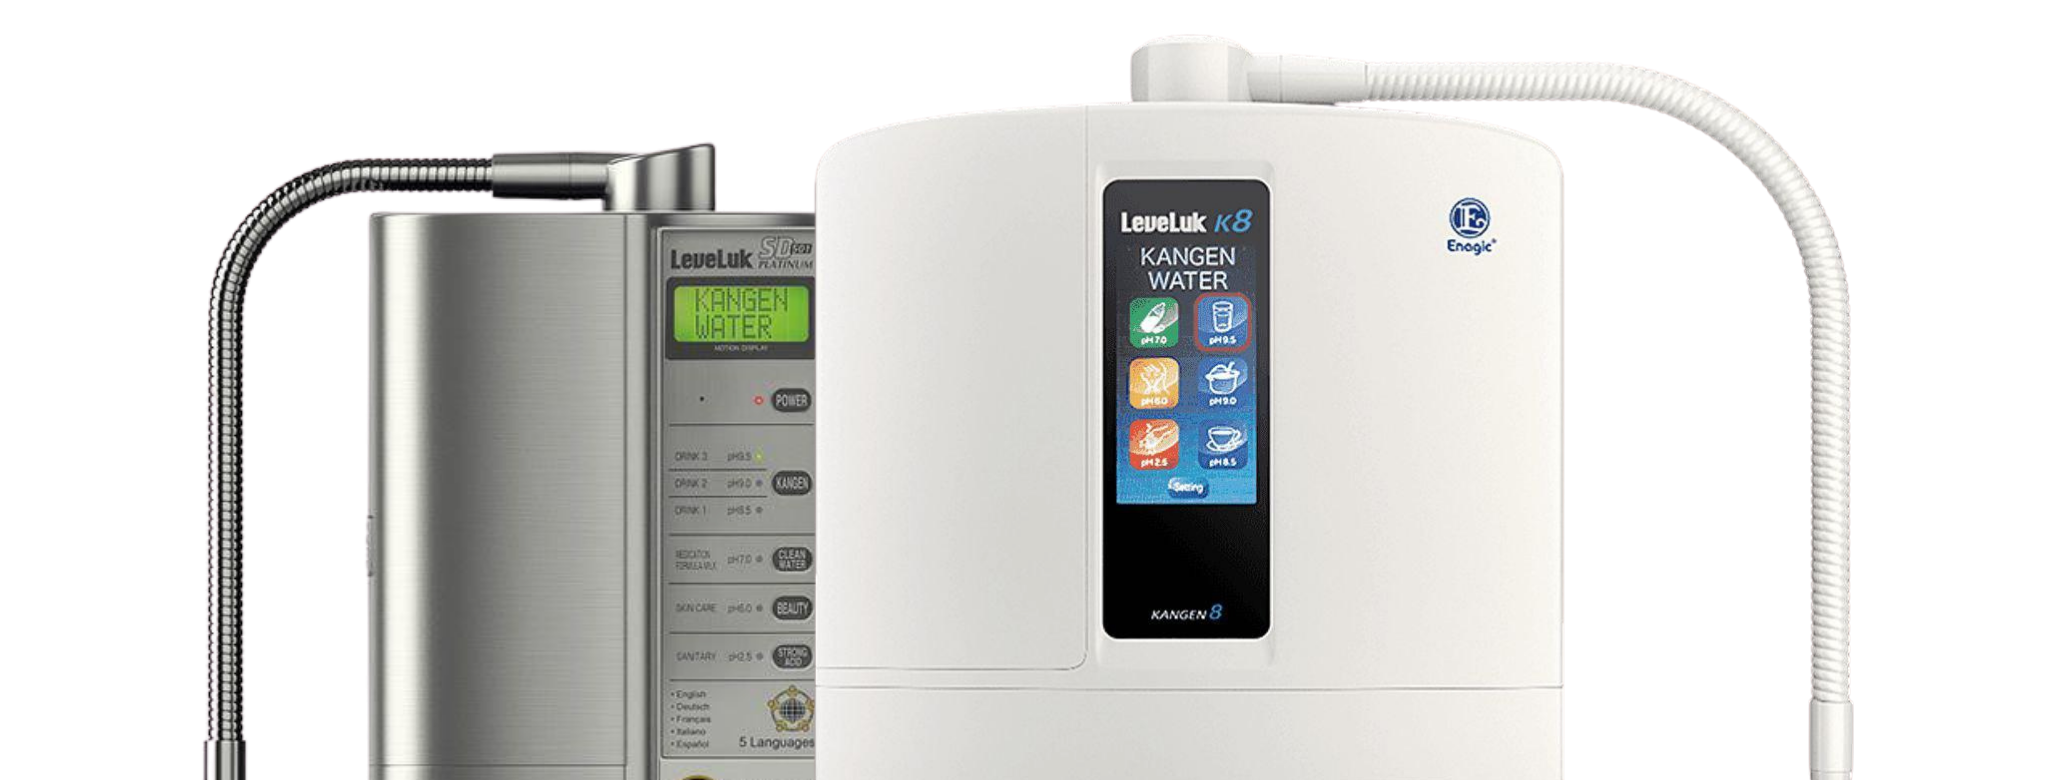 Kangen Water Machine K8 Enagic - Alkaline Water & Water Ionizer Sale!